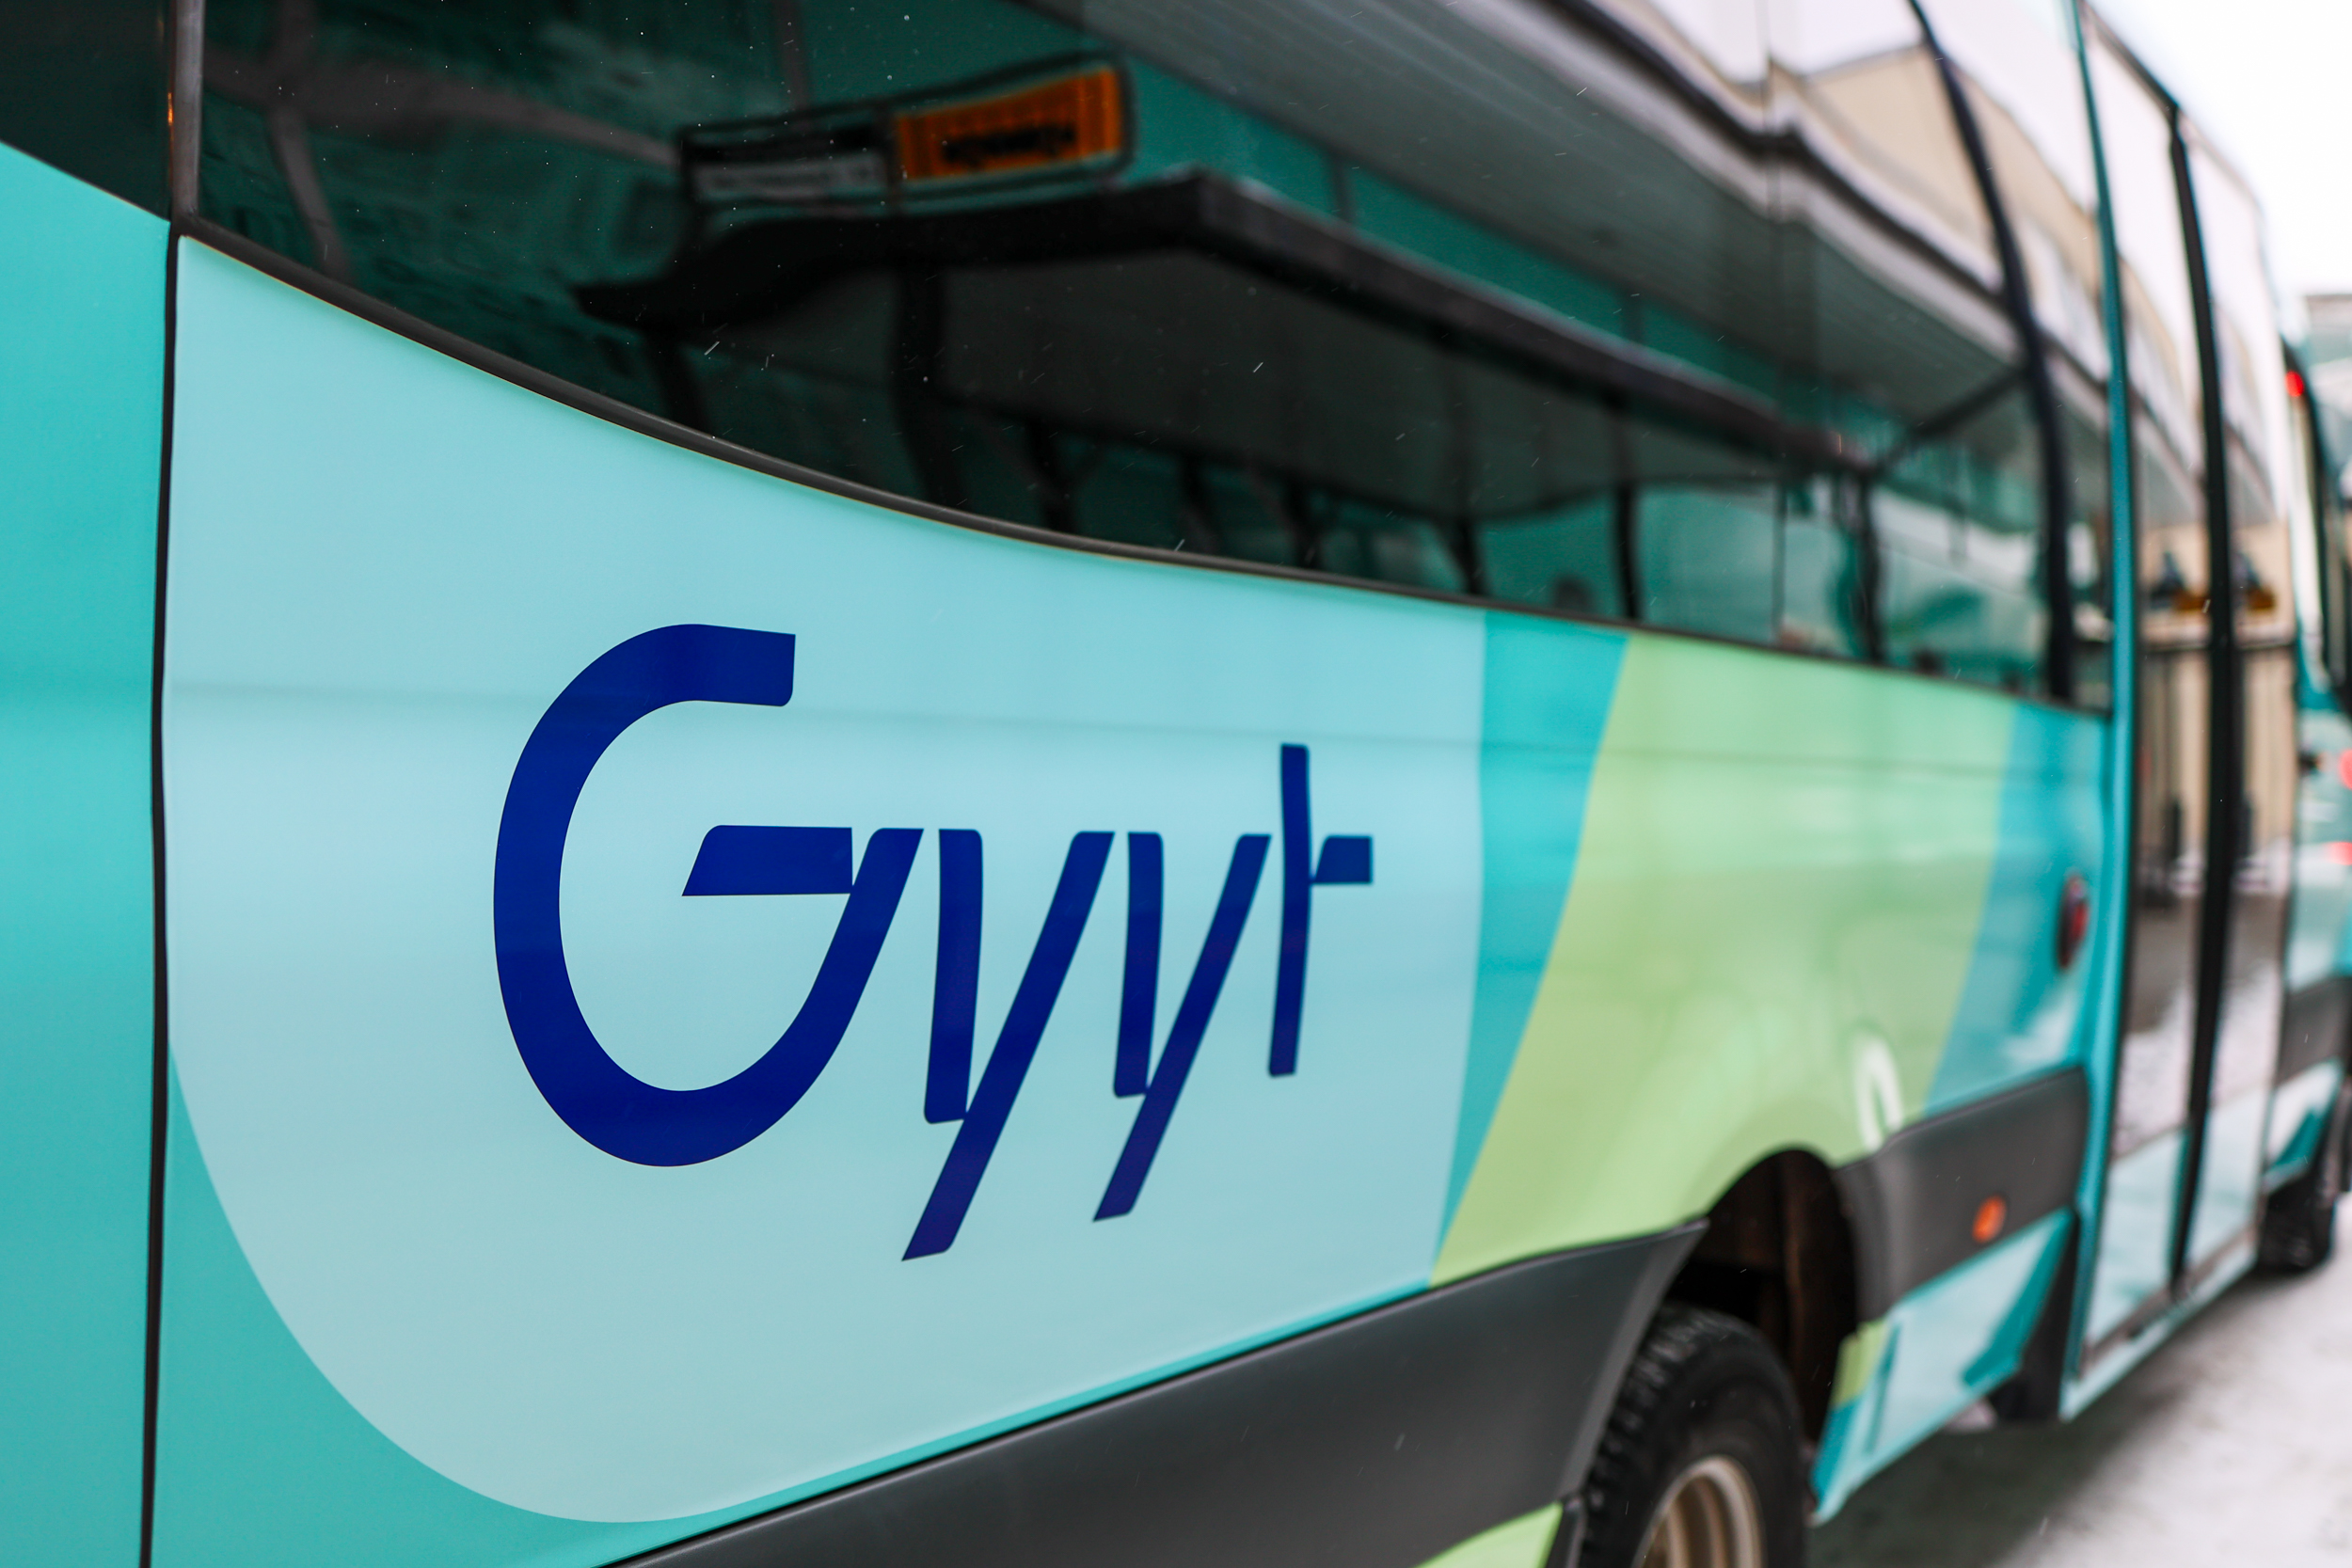 Gyyt-logo linja-auton kyljessä.